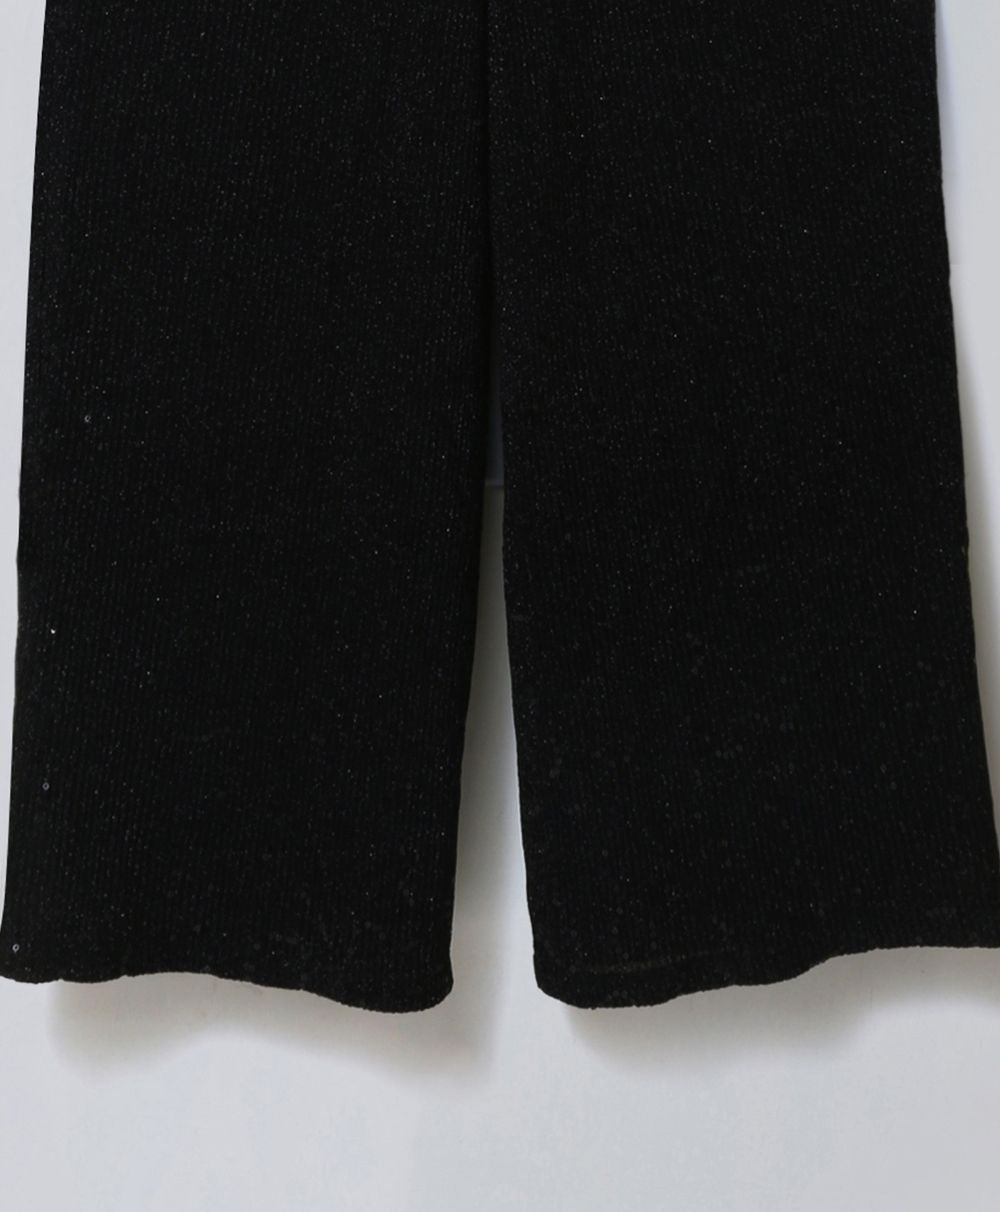 Black Shimmery Belted Jumpsuit